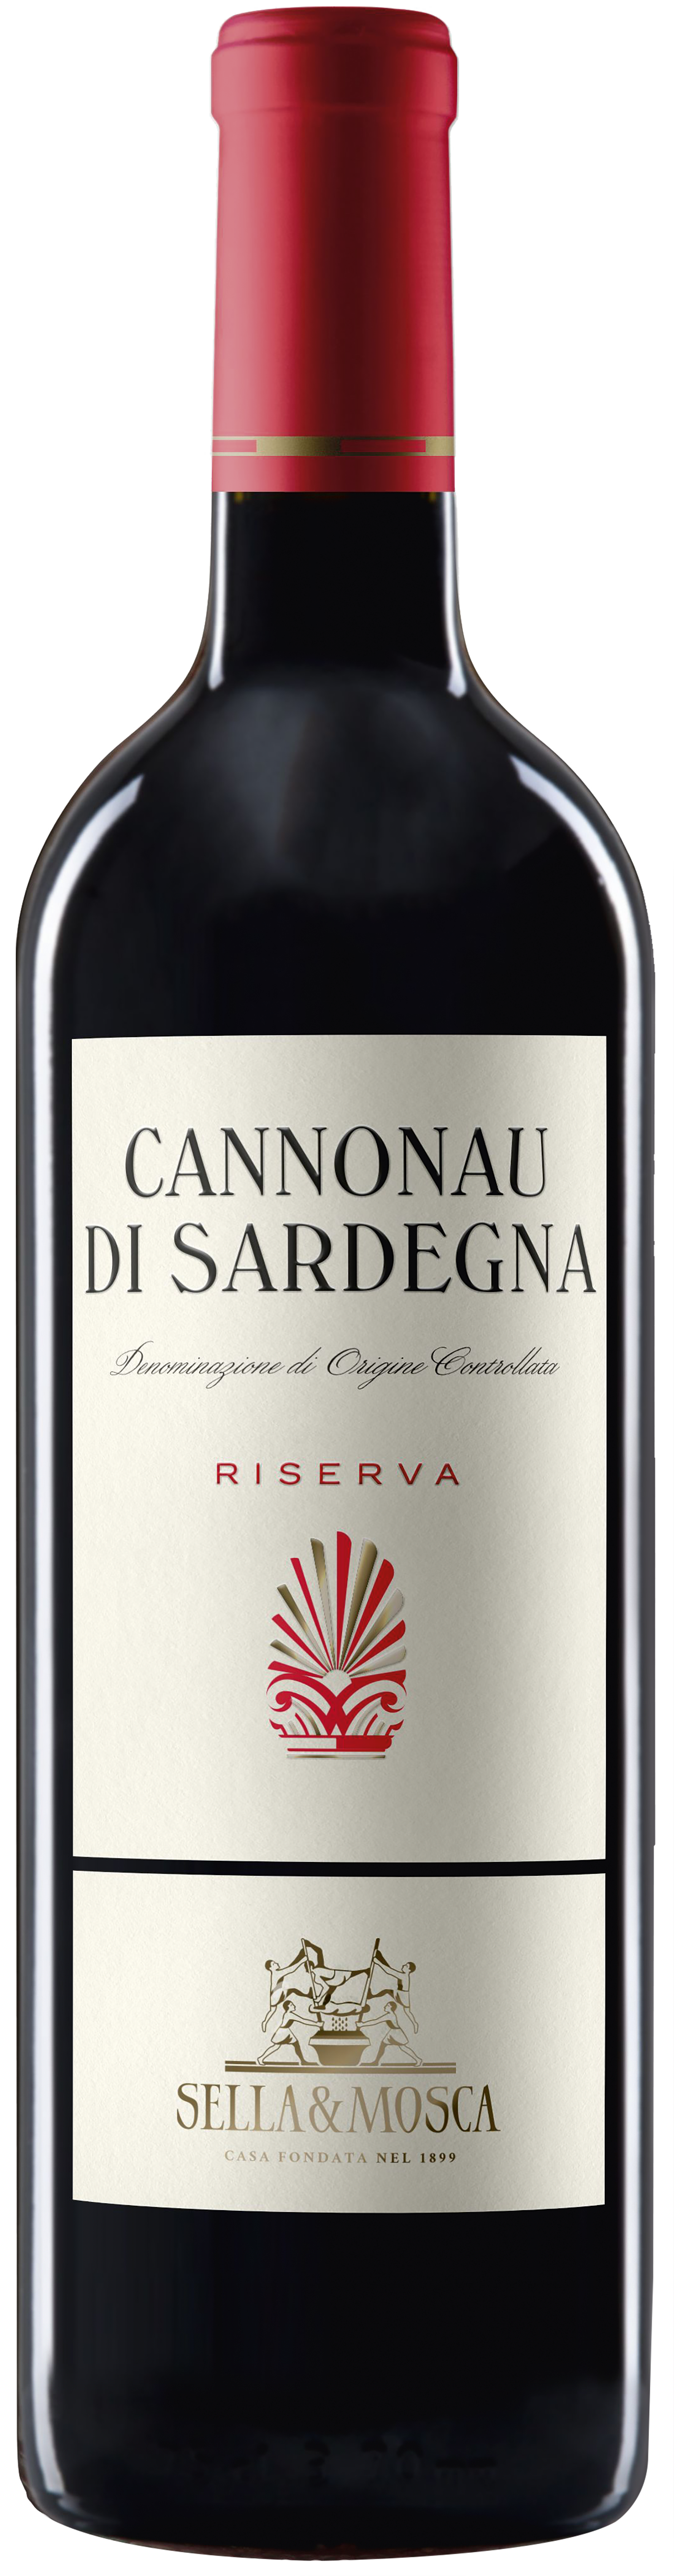 Sella & Mosca Cannonau di Sardegna Riserva 2020 14.0% 0,75l